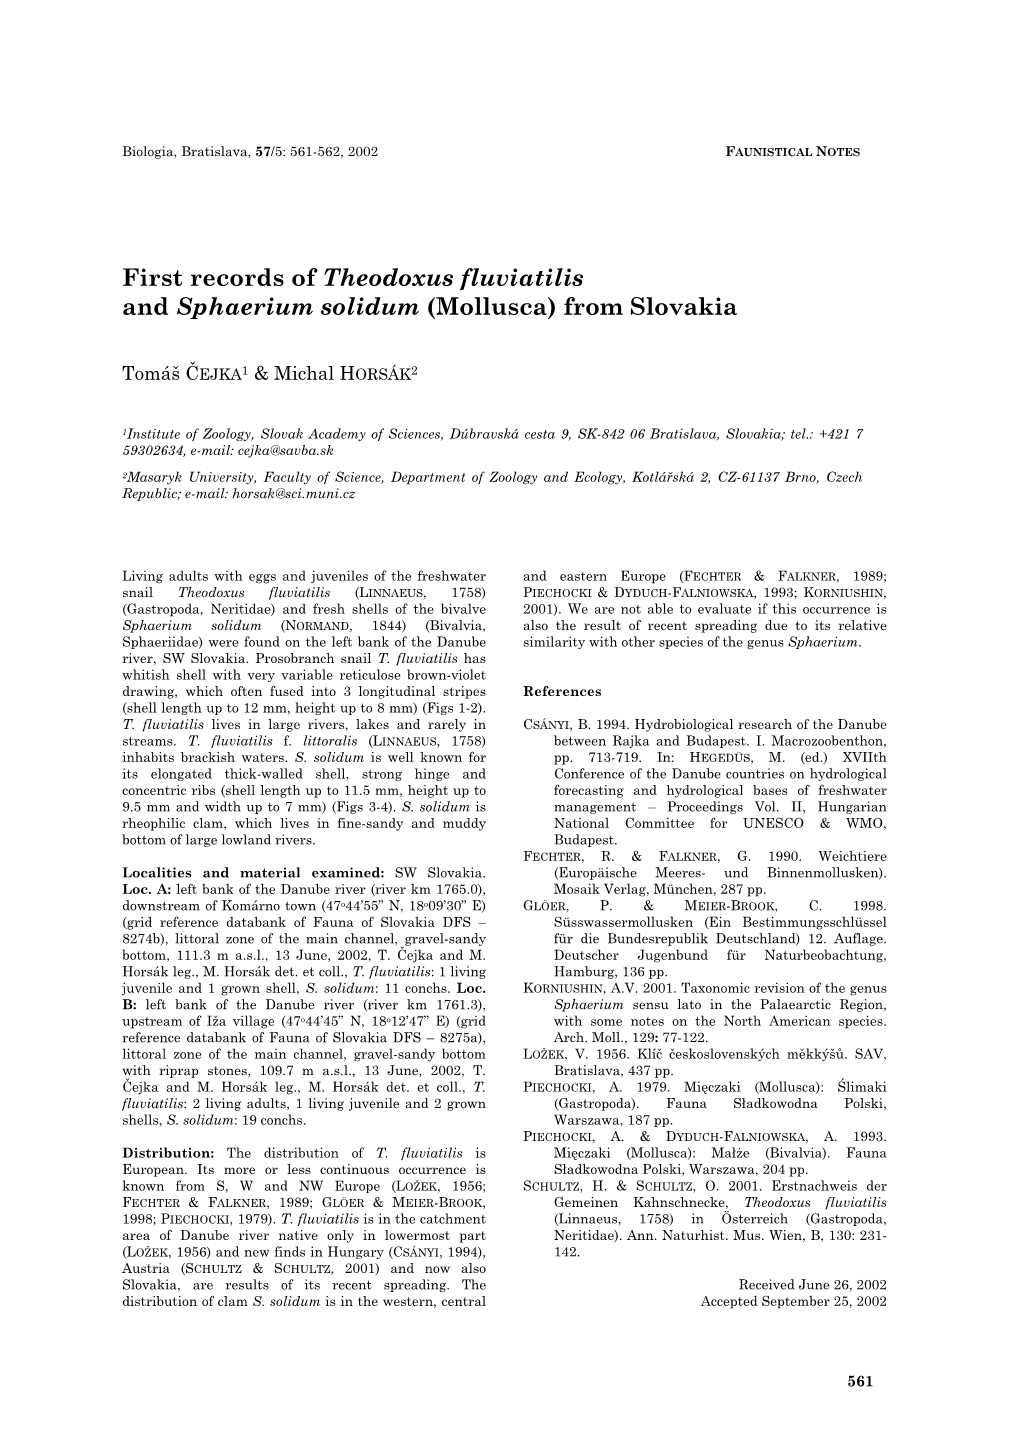 Freshwater Molluscs Theodoxus Fluviatilis and Sphaerium Solidum